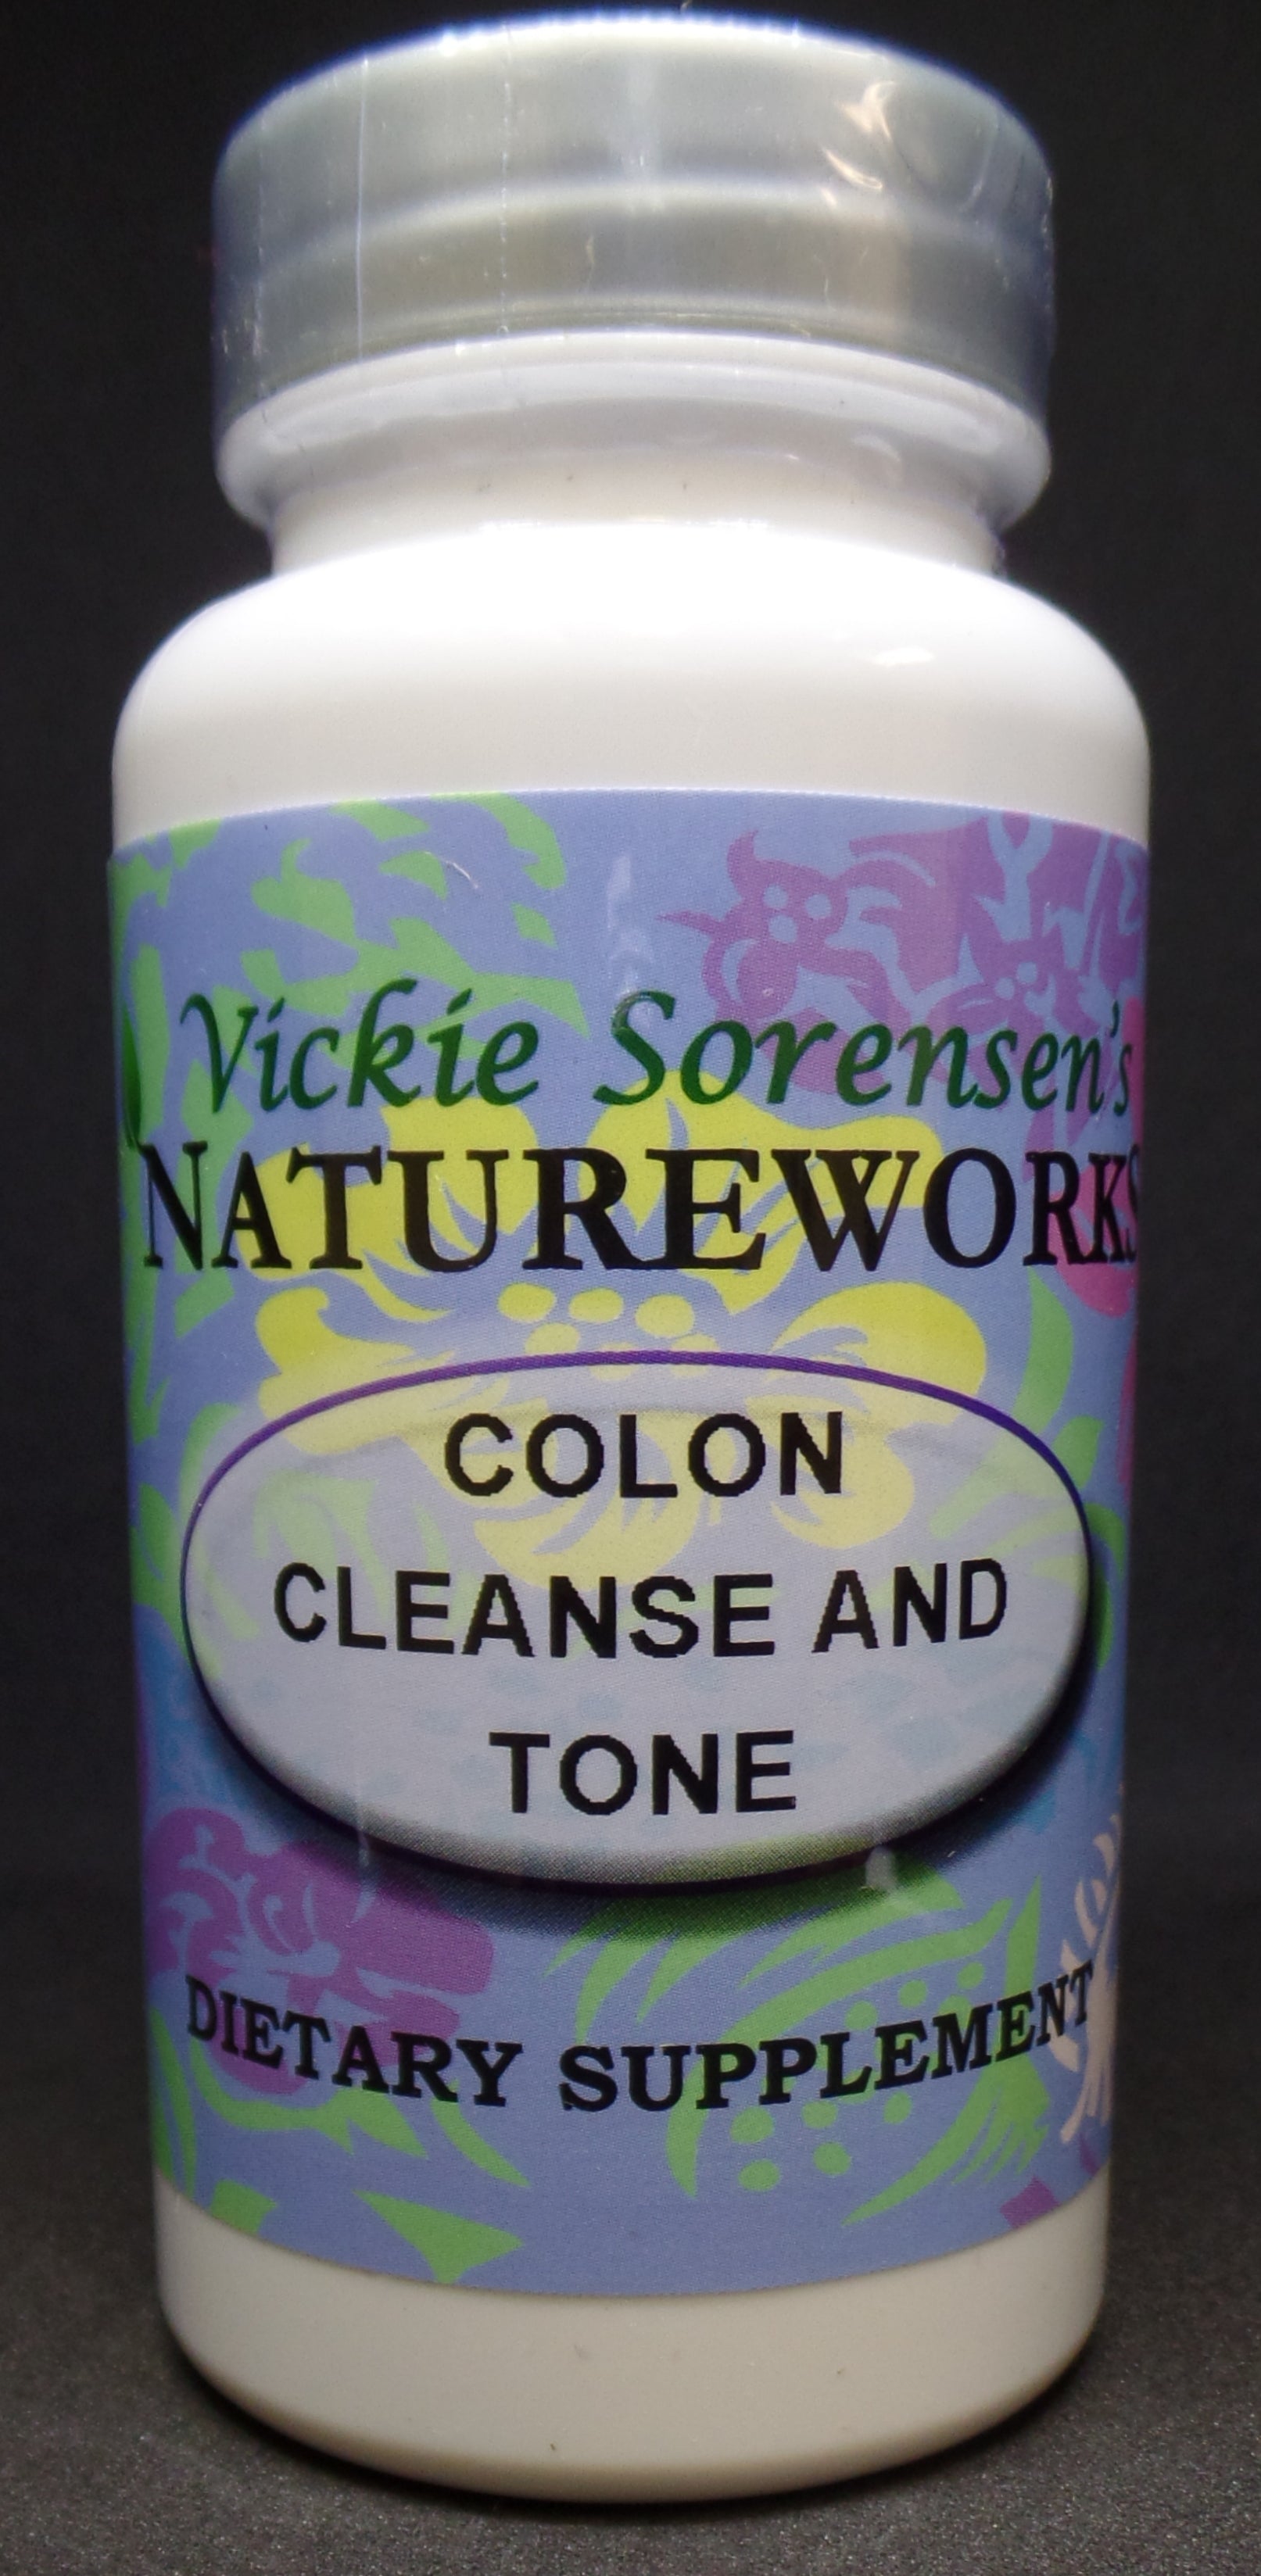 Colon Cleanse & Tone